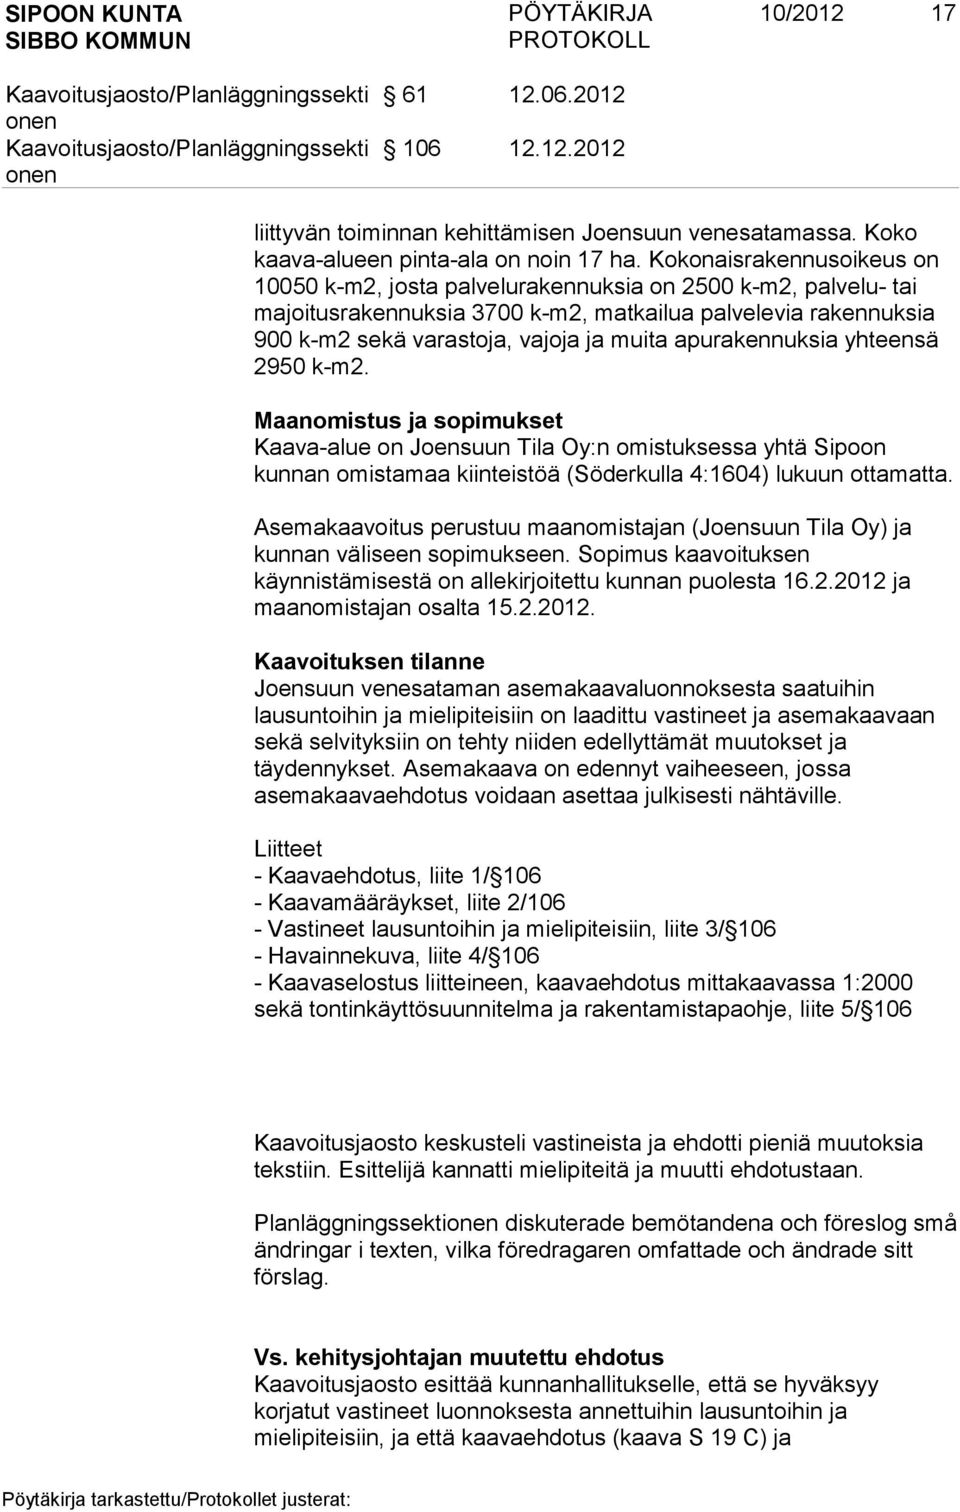 apurakennuksia yhteensä 2950 k-m2. Maanomistus ja sopimukset Kaava-alue on Joensuun Tila Oy:n omistuksessa yhtä Sipoon kunnan omistamaa kiinteistöä (Söderkulla 4:1604) lukuun ottamatta.